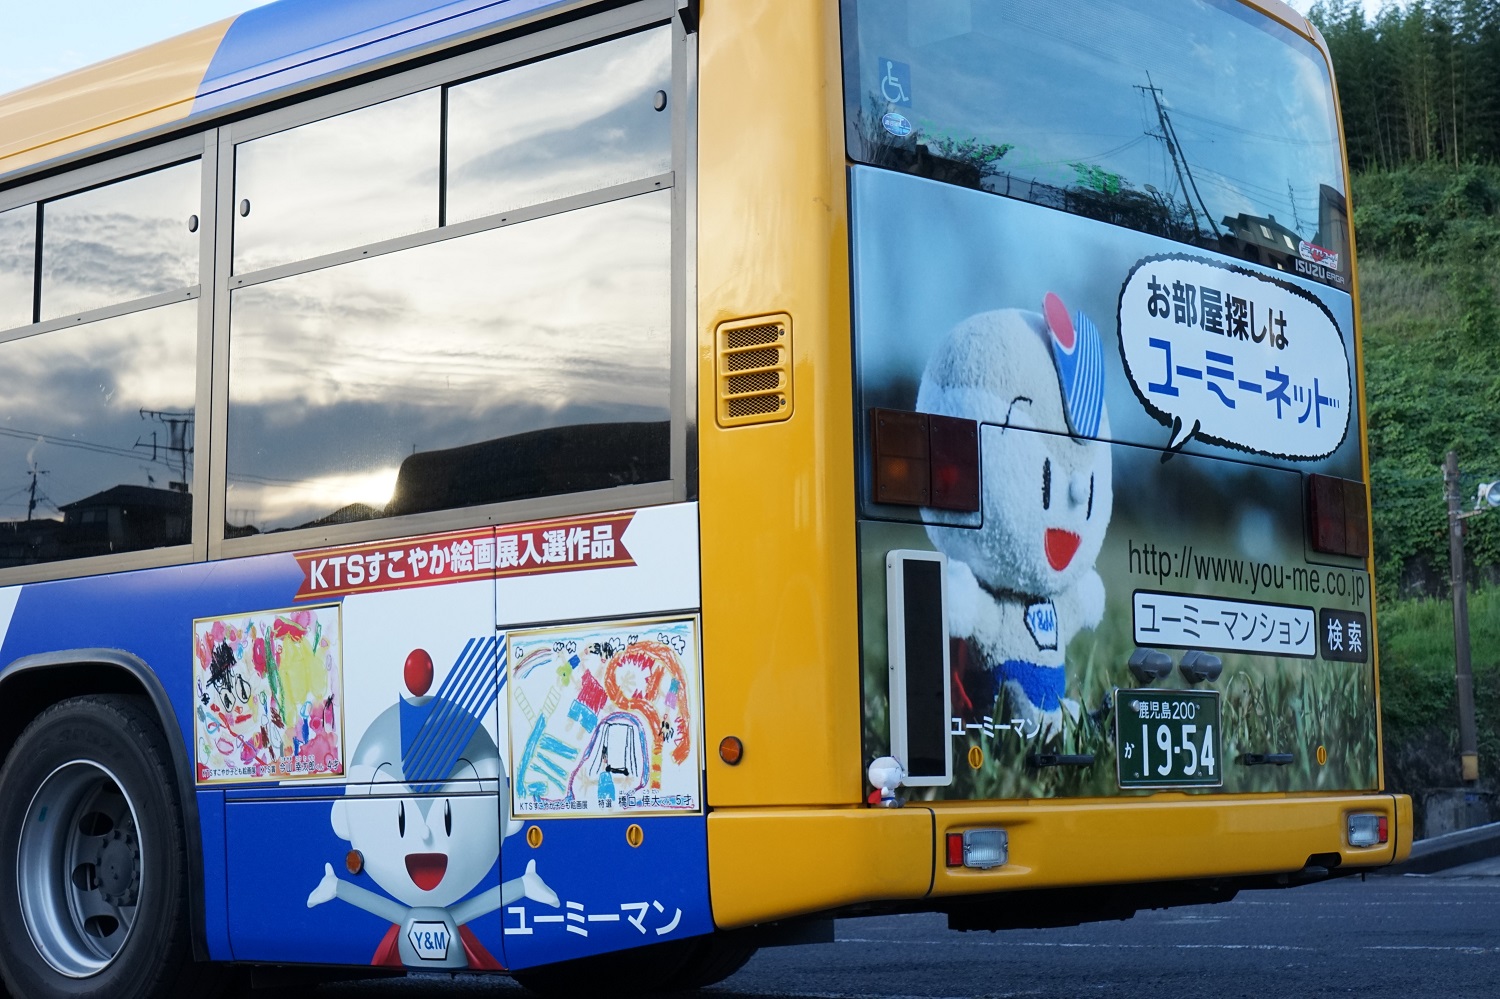 新デザイン『ユーミーラッピングバス』運行開始｜ユーミーマンションは日本全国7,100棟、90,000世帯！ ユーミーコーポレーション株式会社